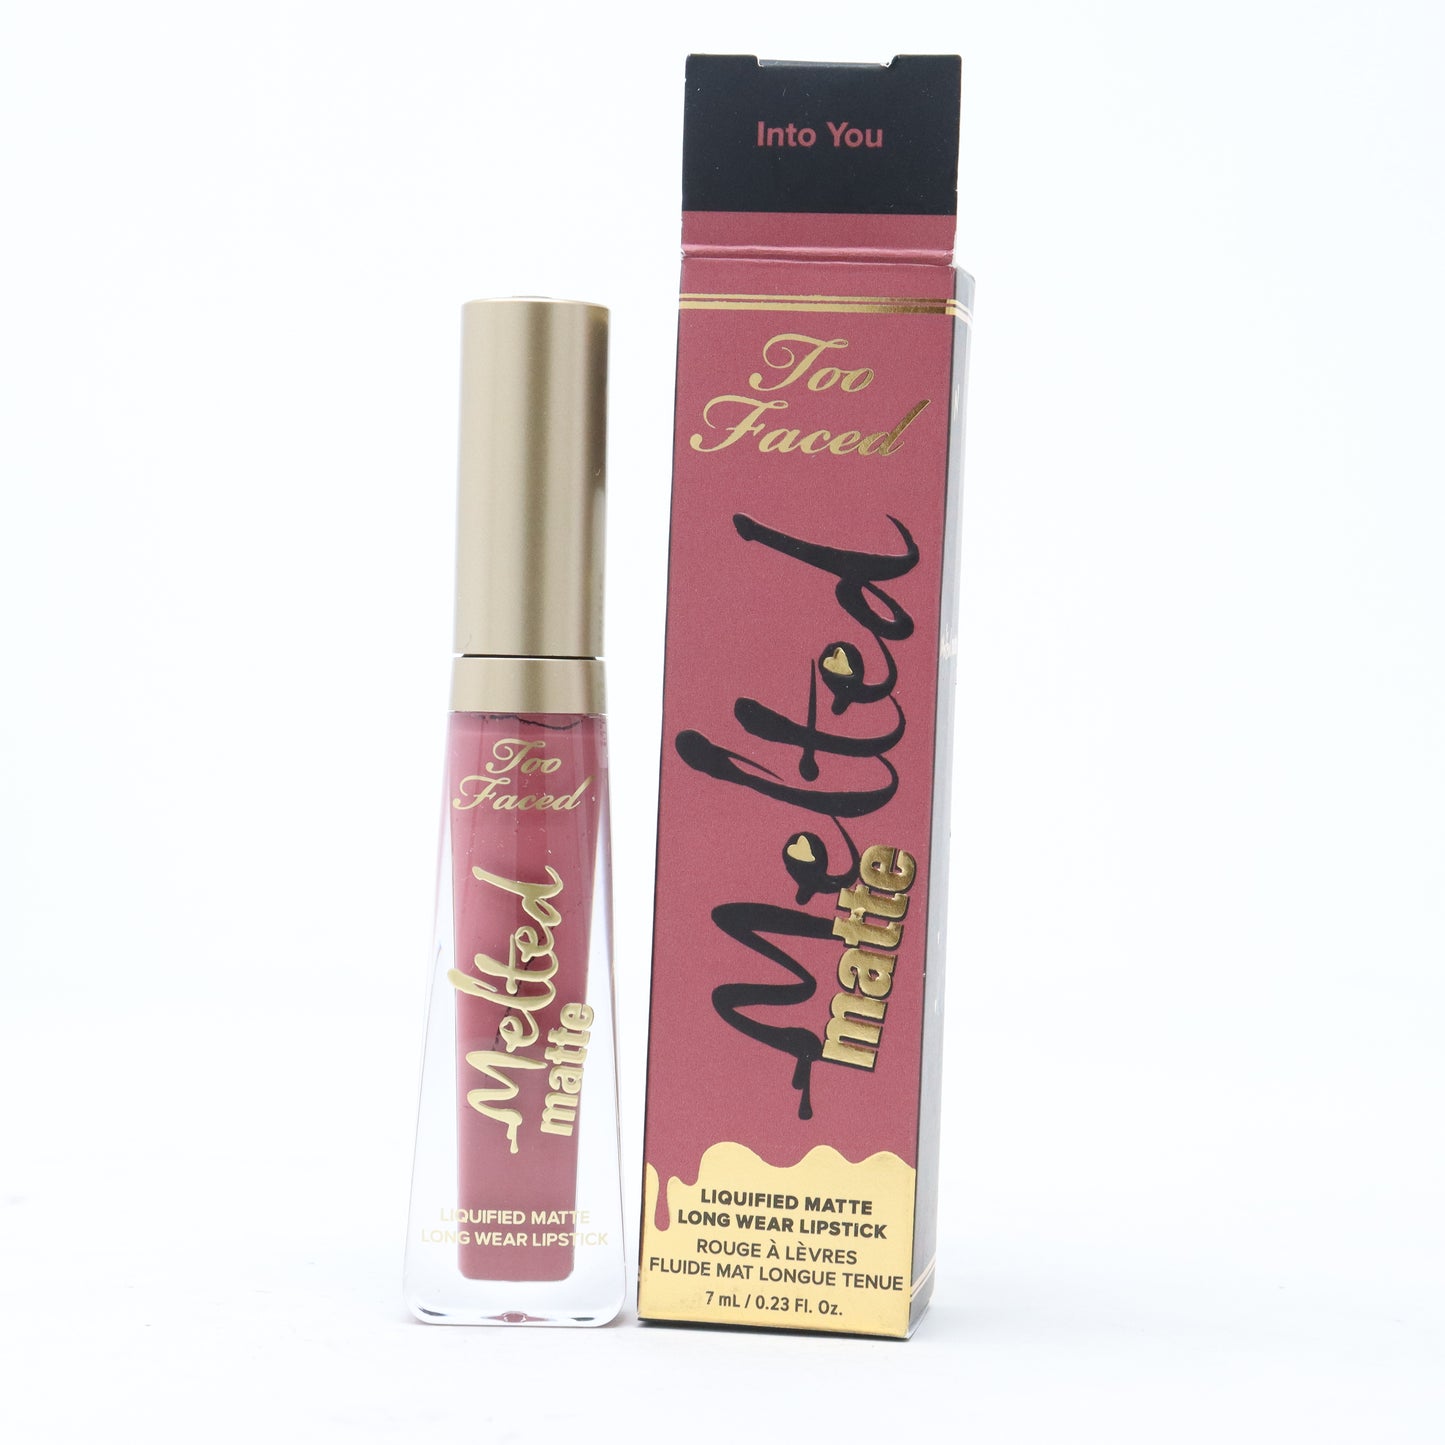 Melted Matte Liquified Matte Long Wear Lipstick